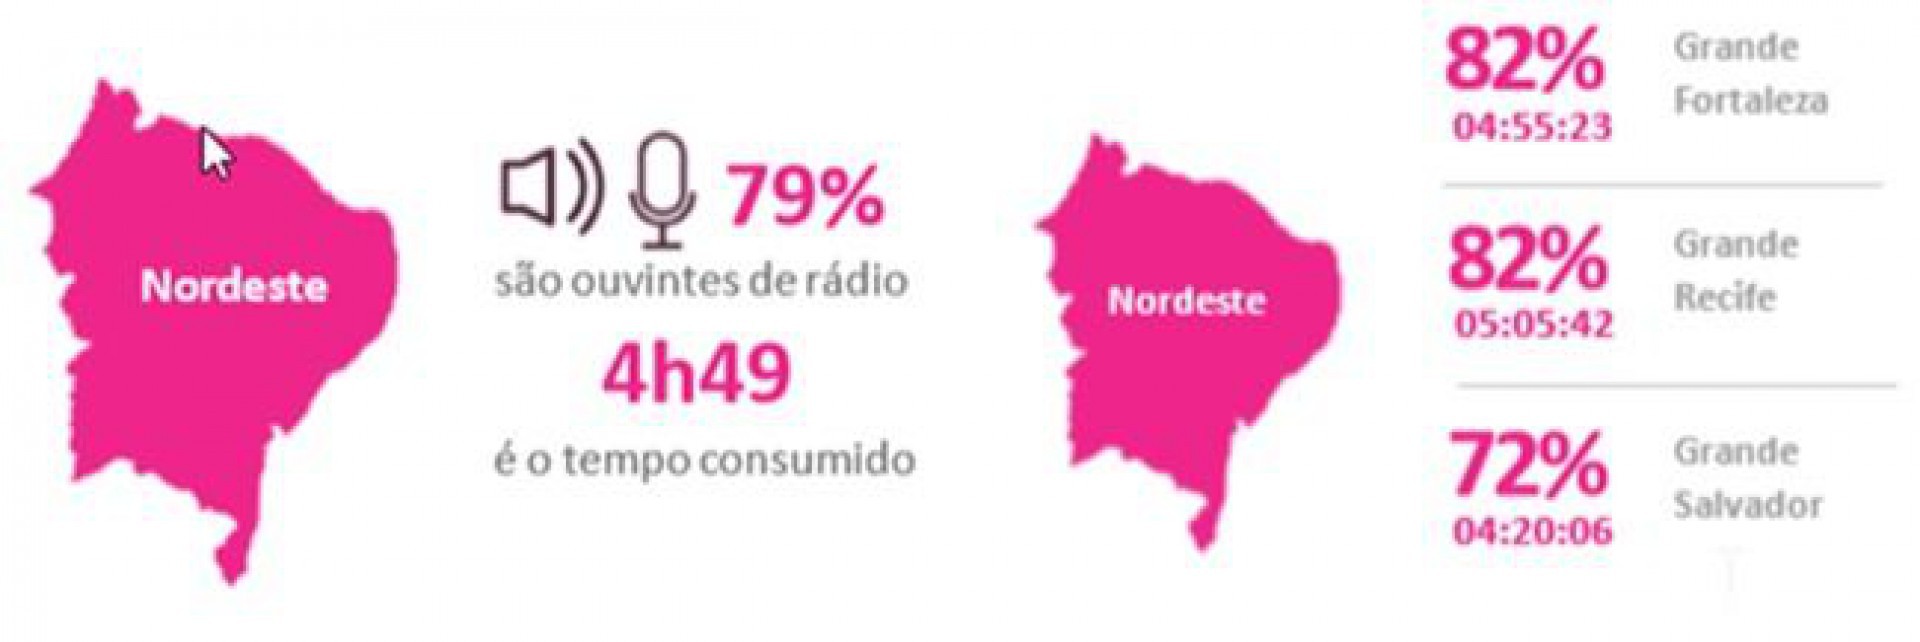 Pesquisa mostra o impacto do rádio no Nordeste (Foto: REPRODUÇÃO)